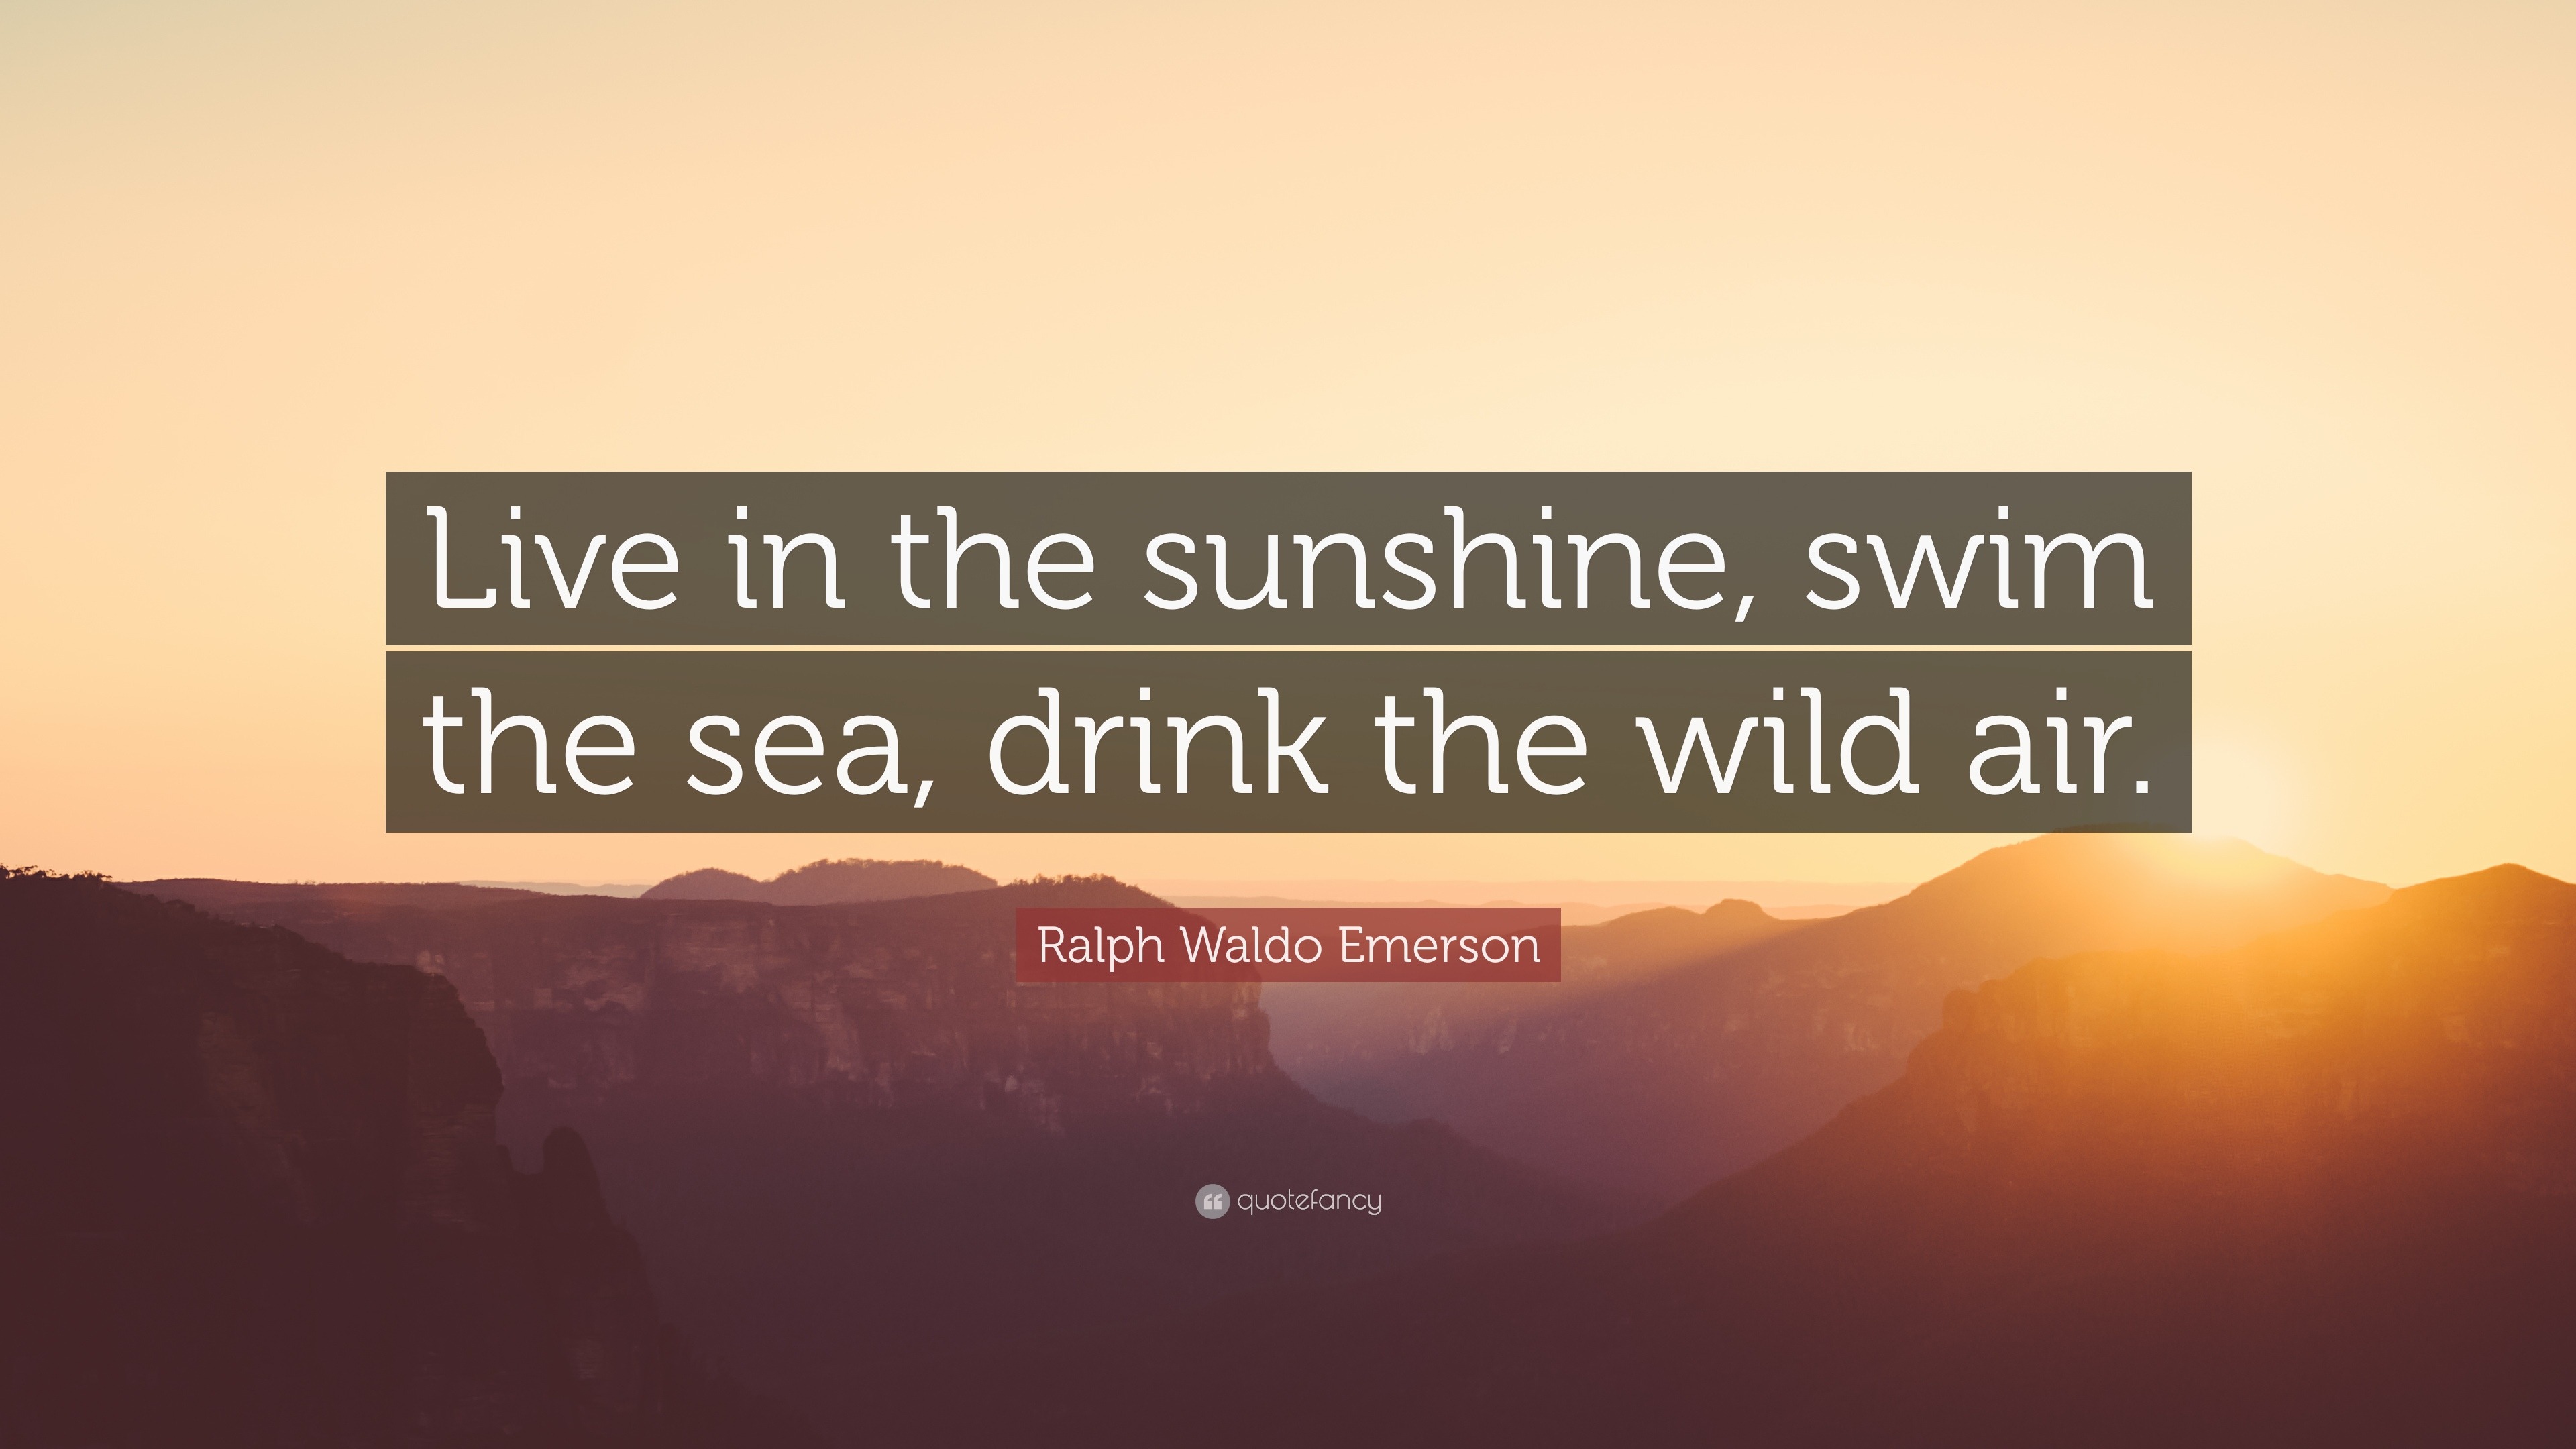 Ralph Waldo Emerson Quote: "Live in the sunshine, swim the sea, drink the wild air." (12 ...